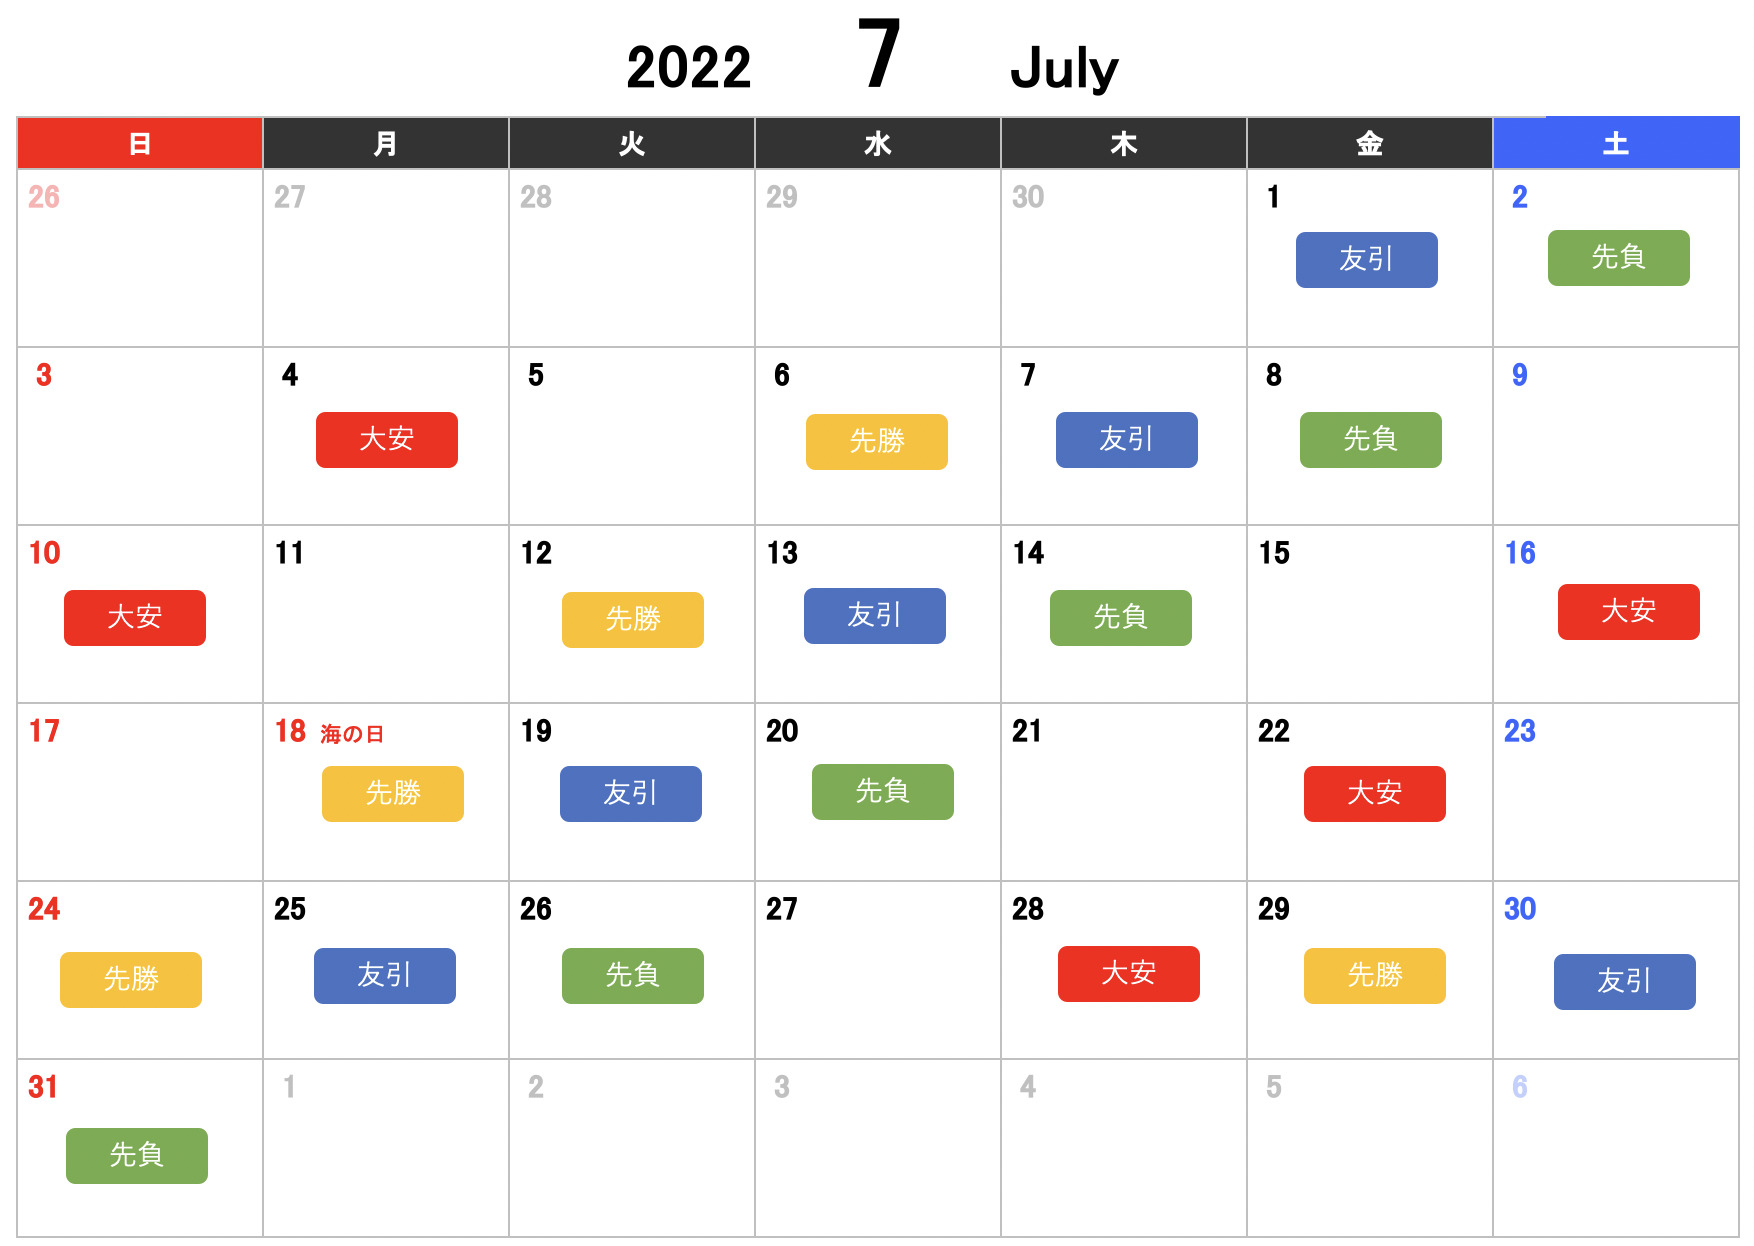 2022年7月カレンダー